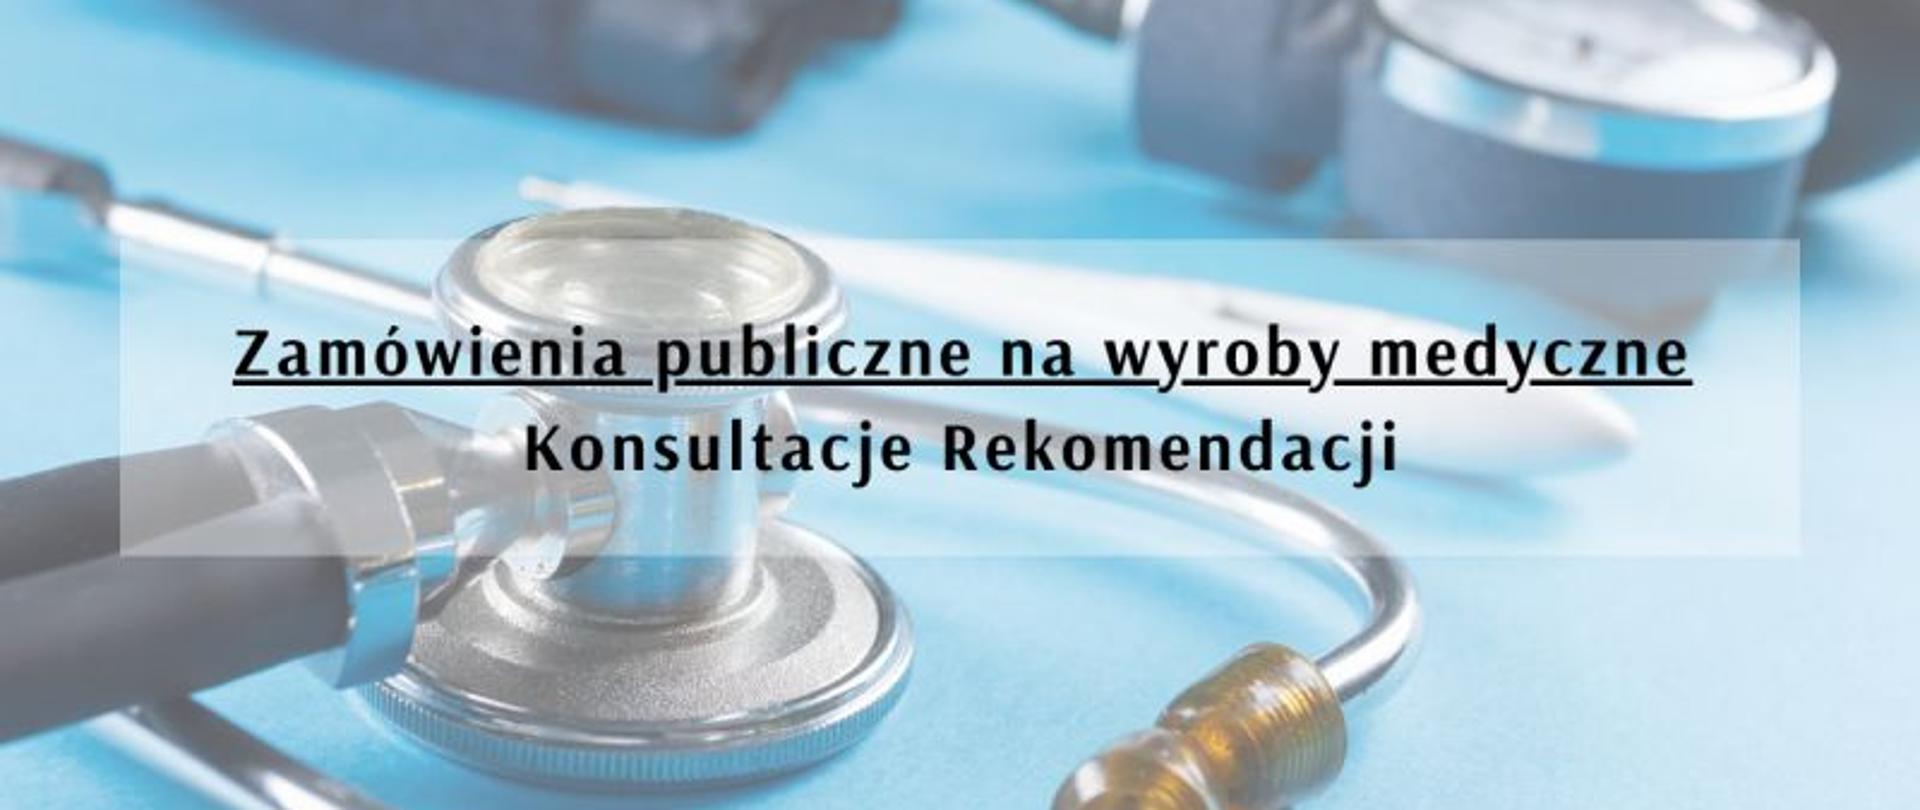 Zamówienia publiczne na wyroby medyczne – konsultacje Rekomendacji